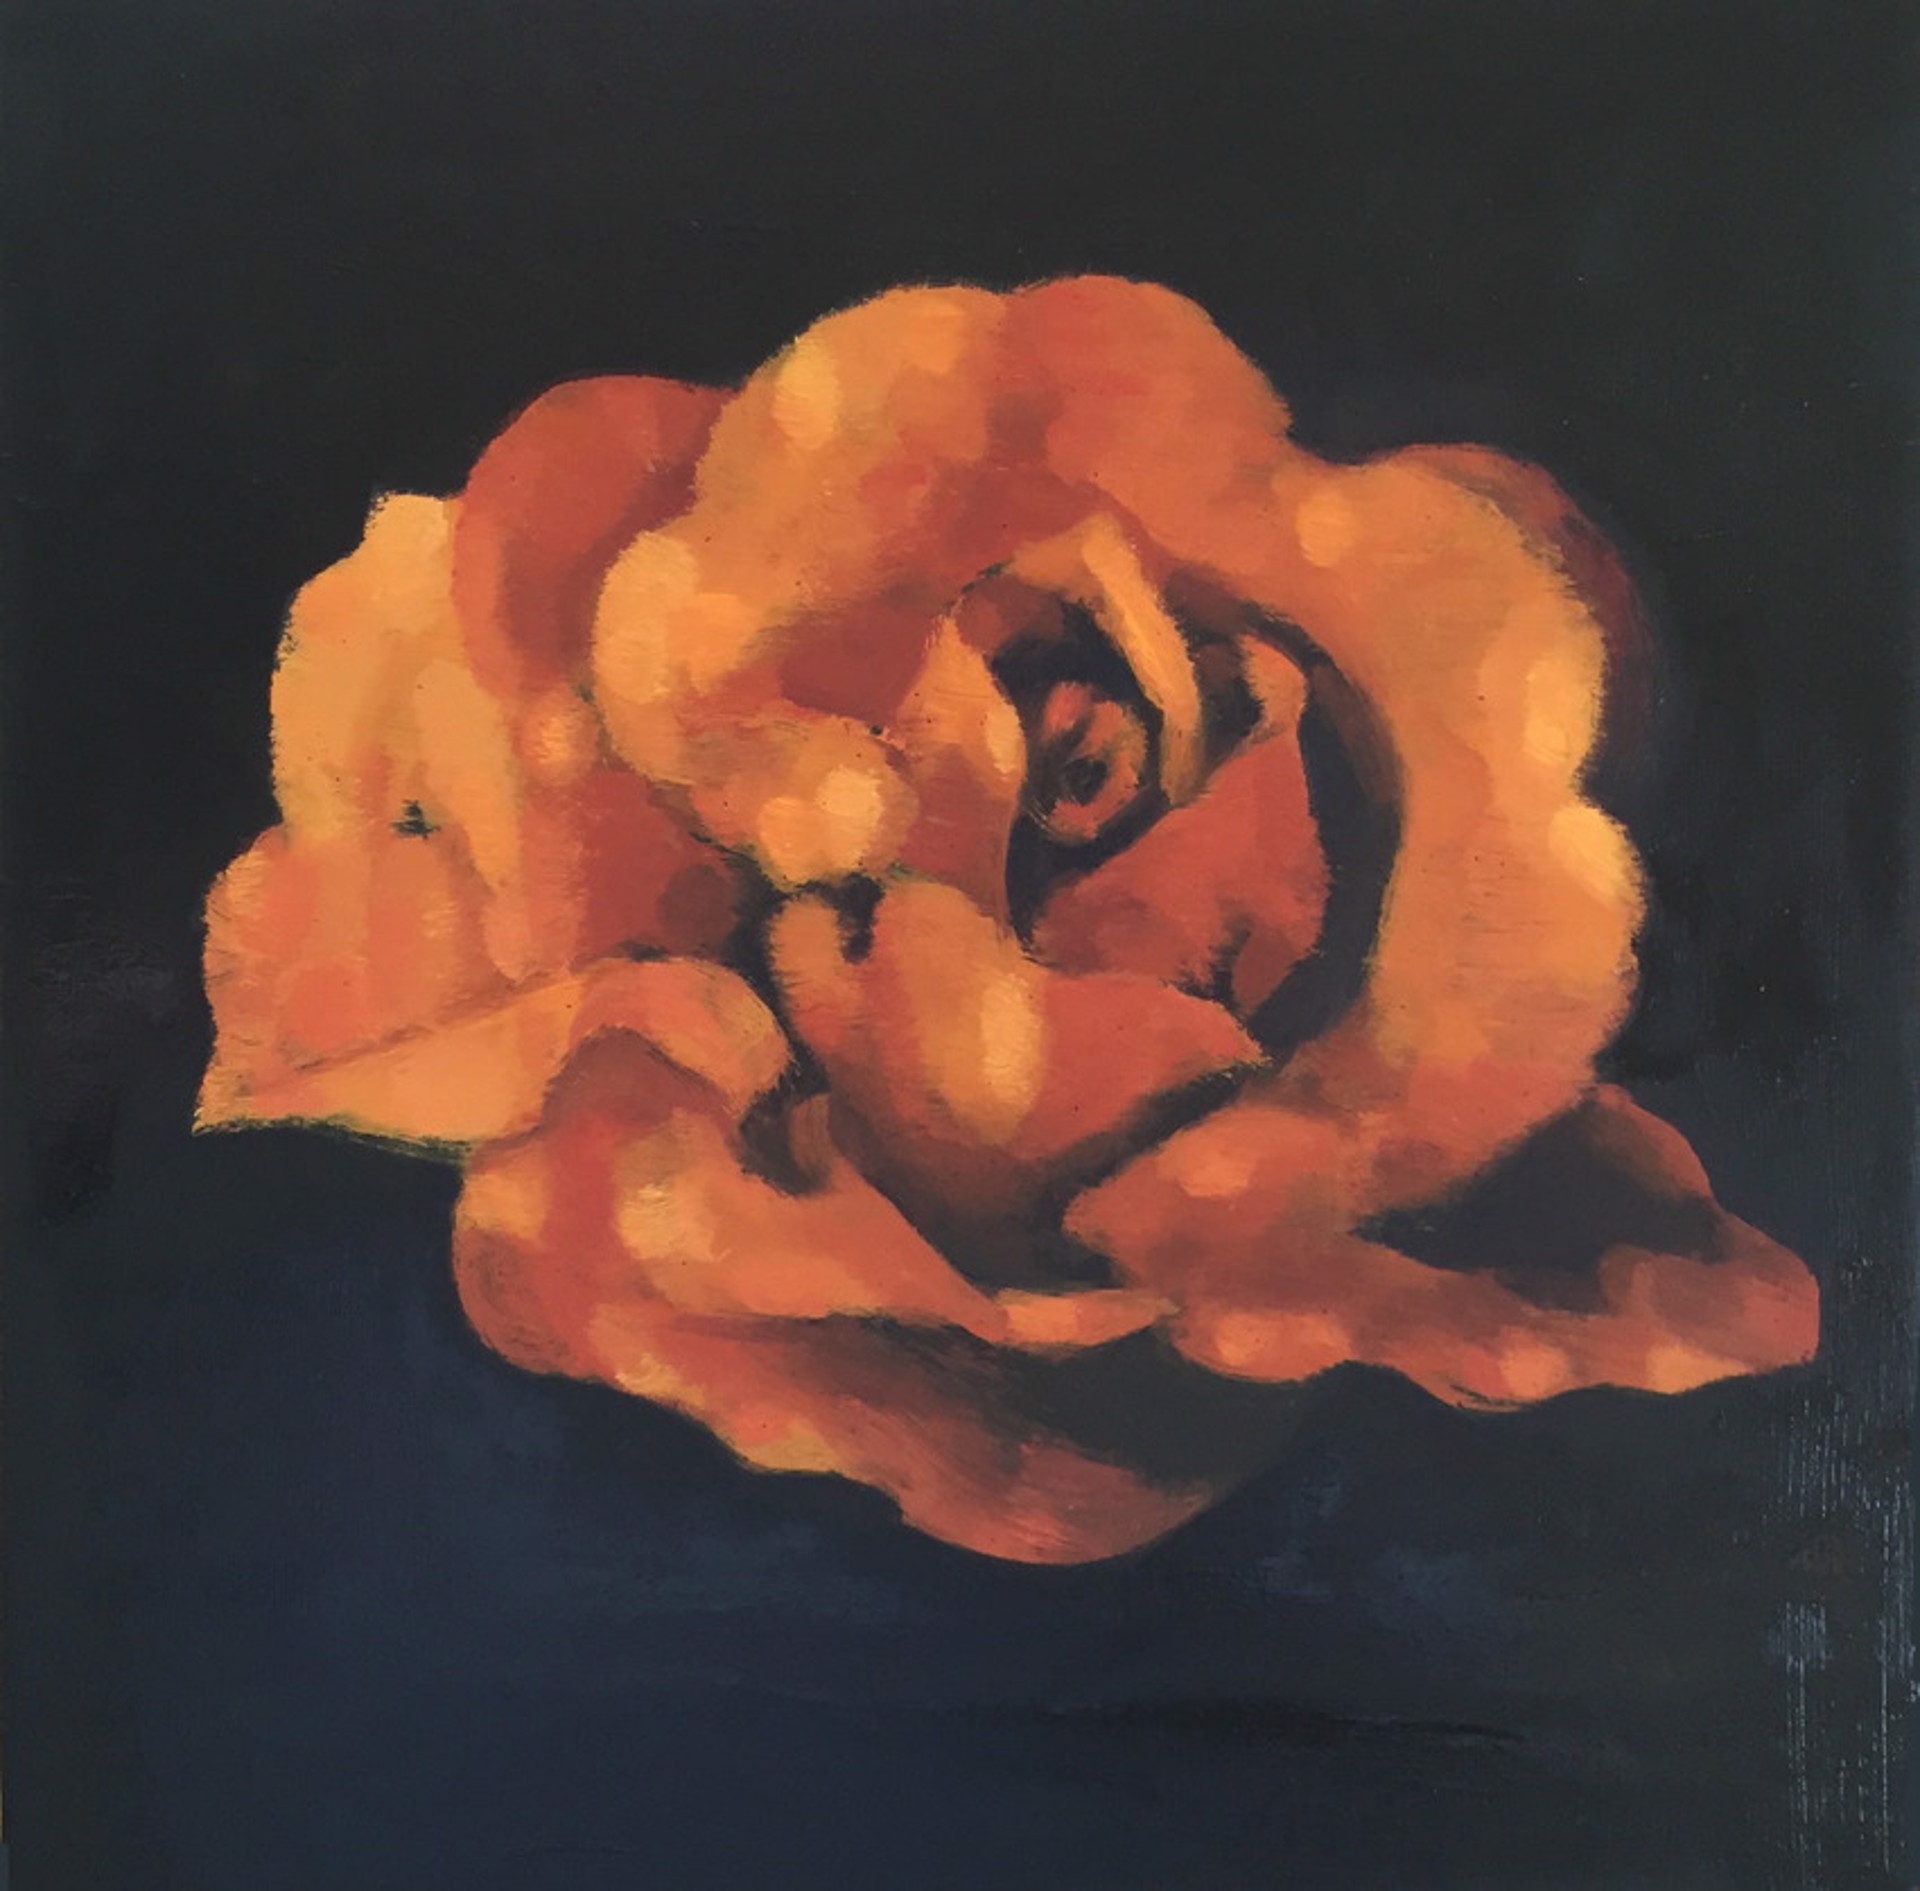 Rose in the Dark by Stephanie Peek